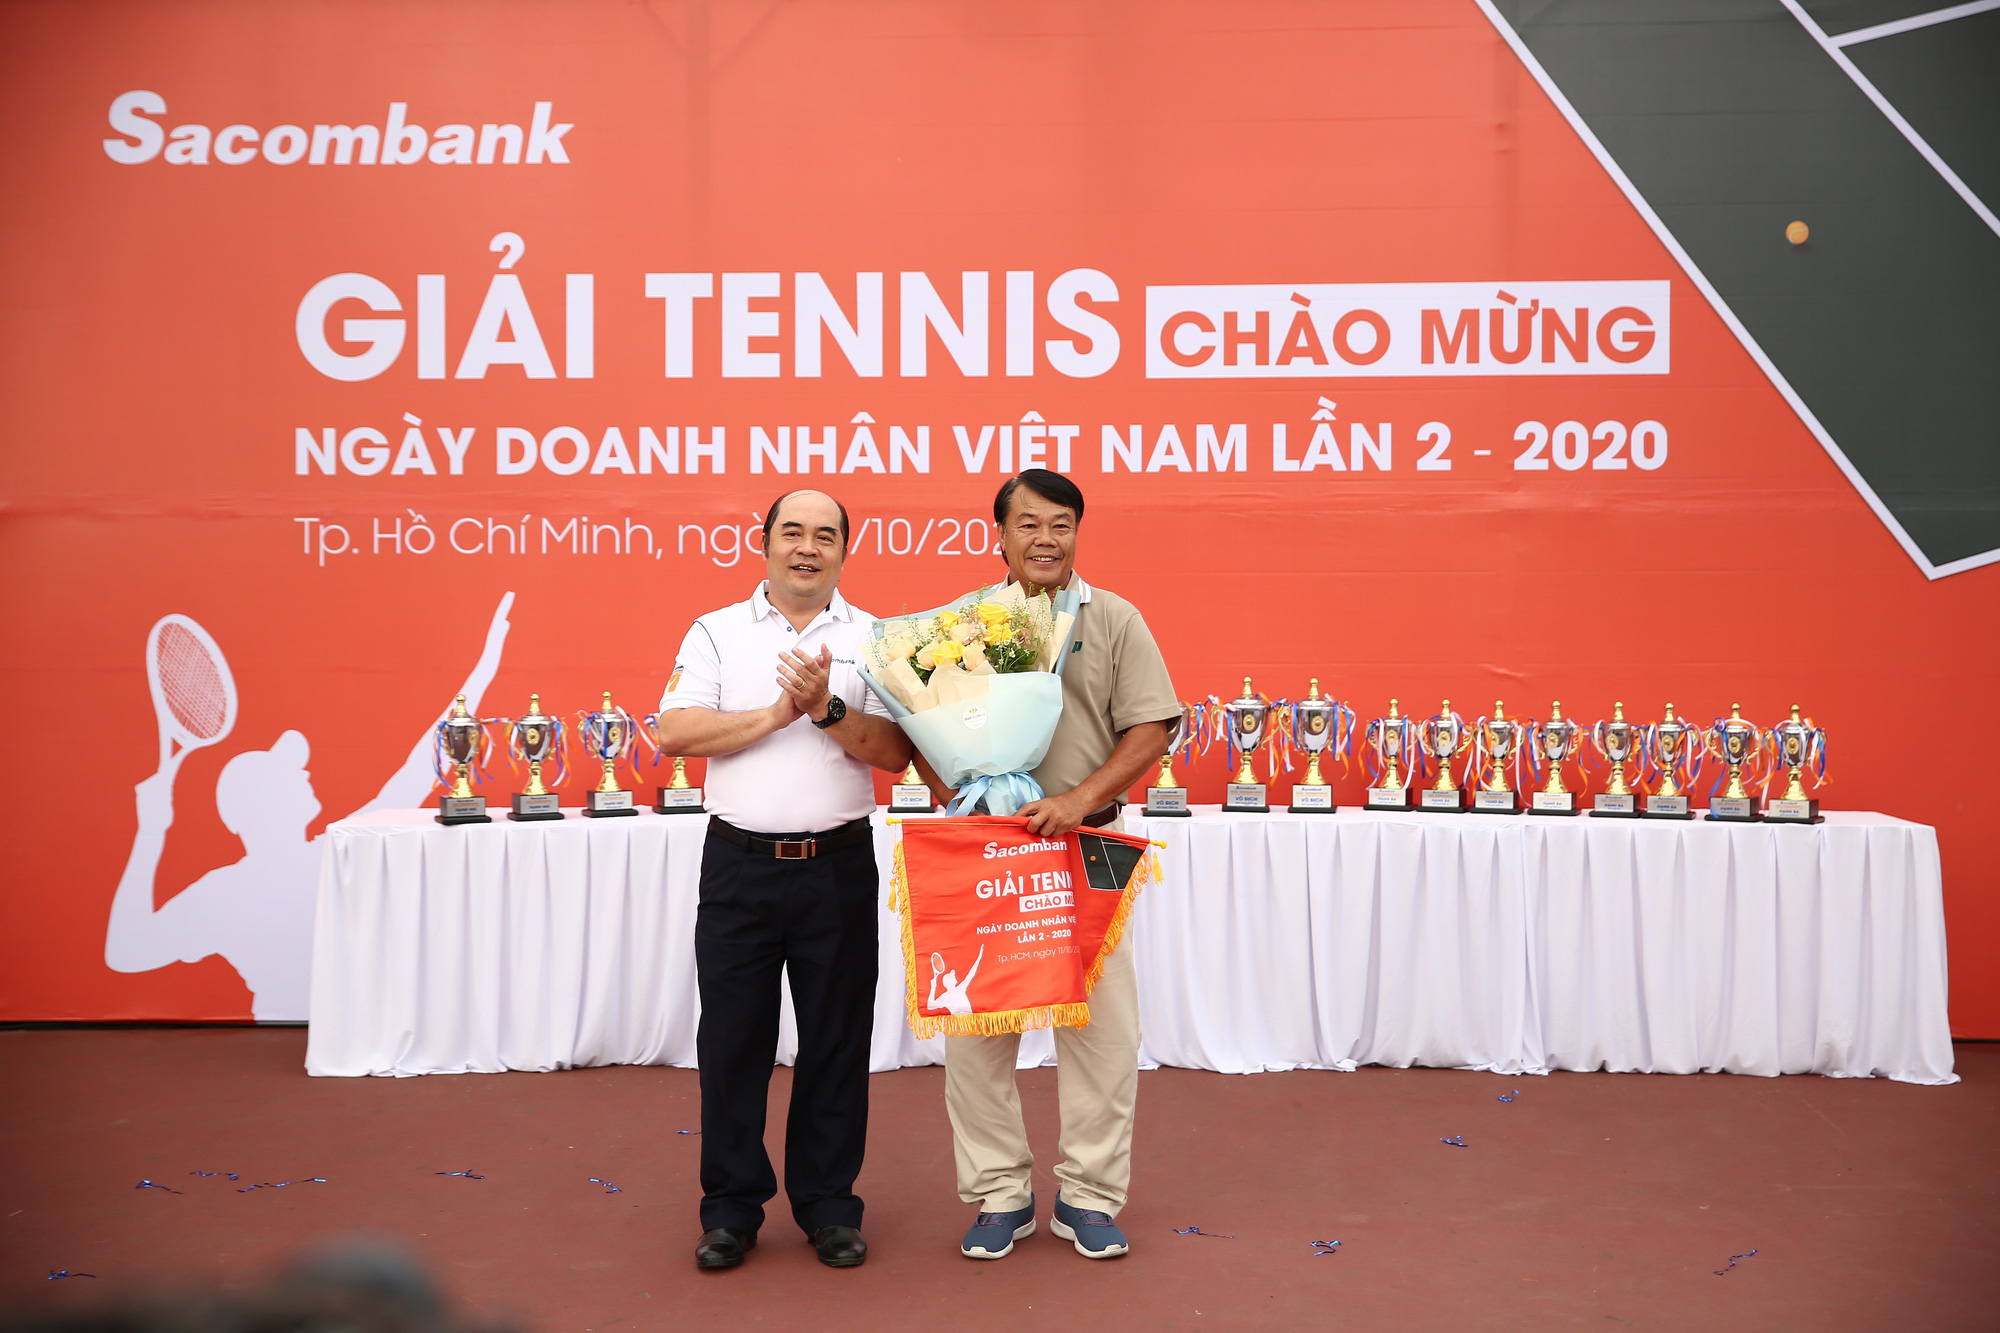  Sacombank tổ chức giải tennis chào mừng ngày Doanh nhân Việt Nam năm 2020 - Ảnh 2.